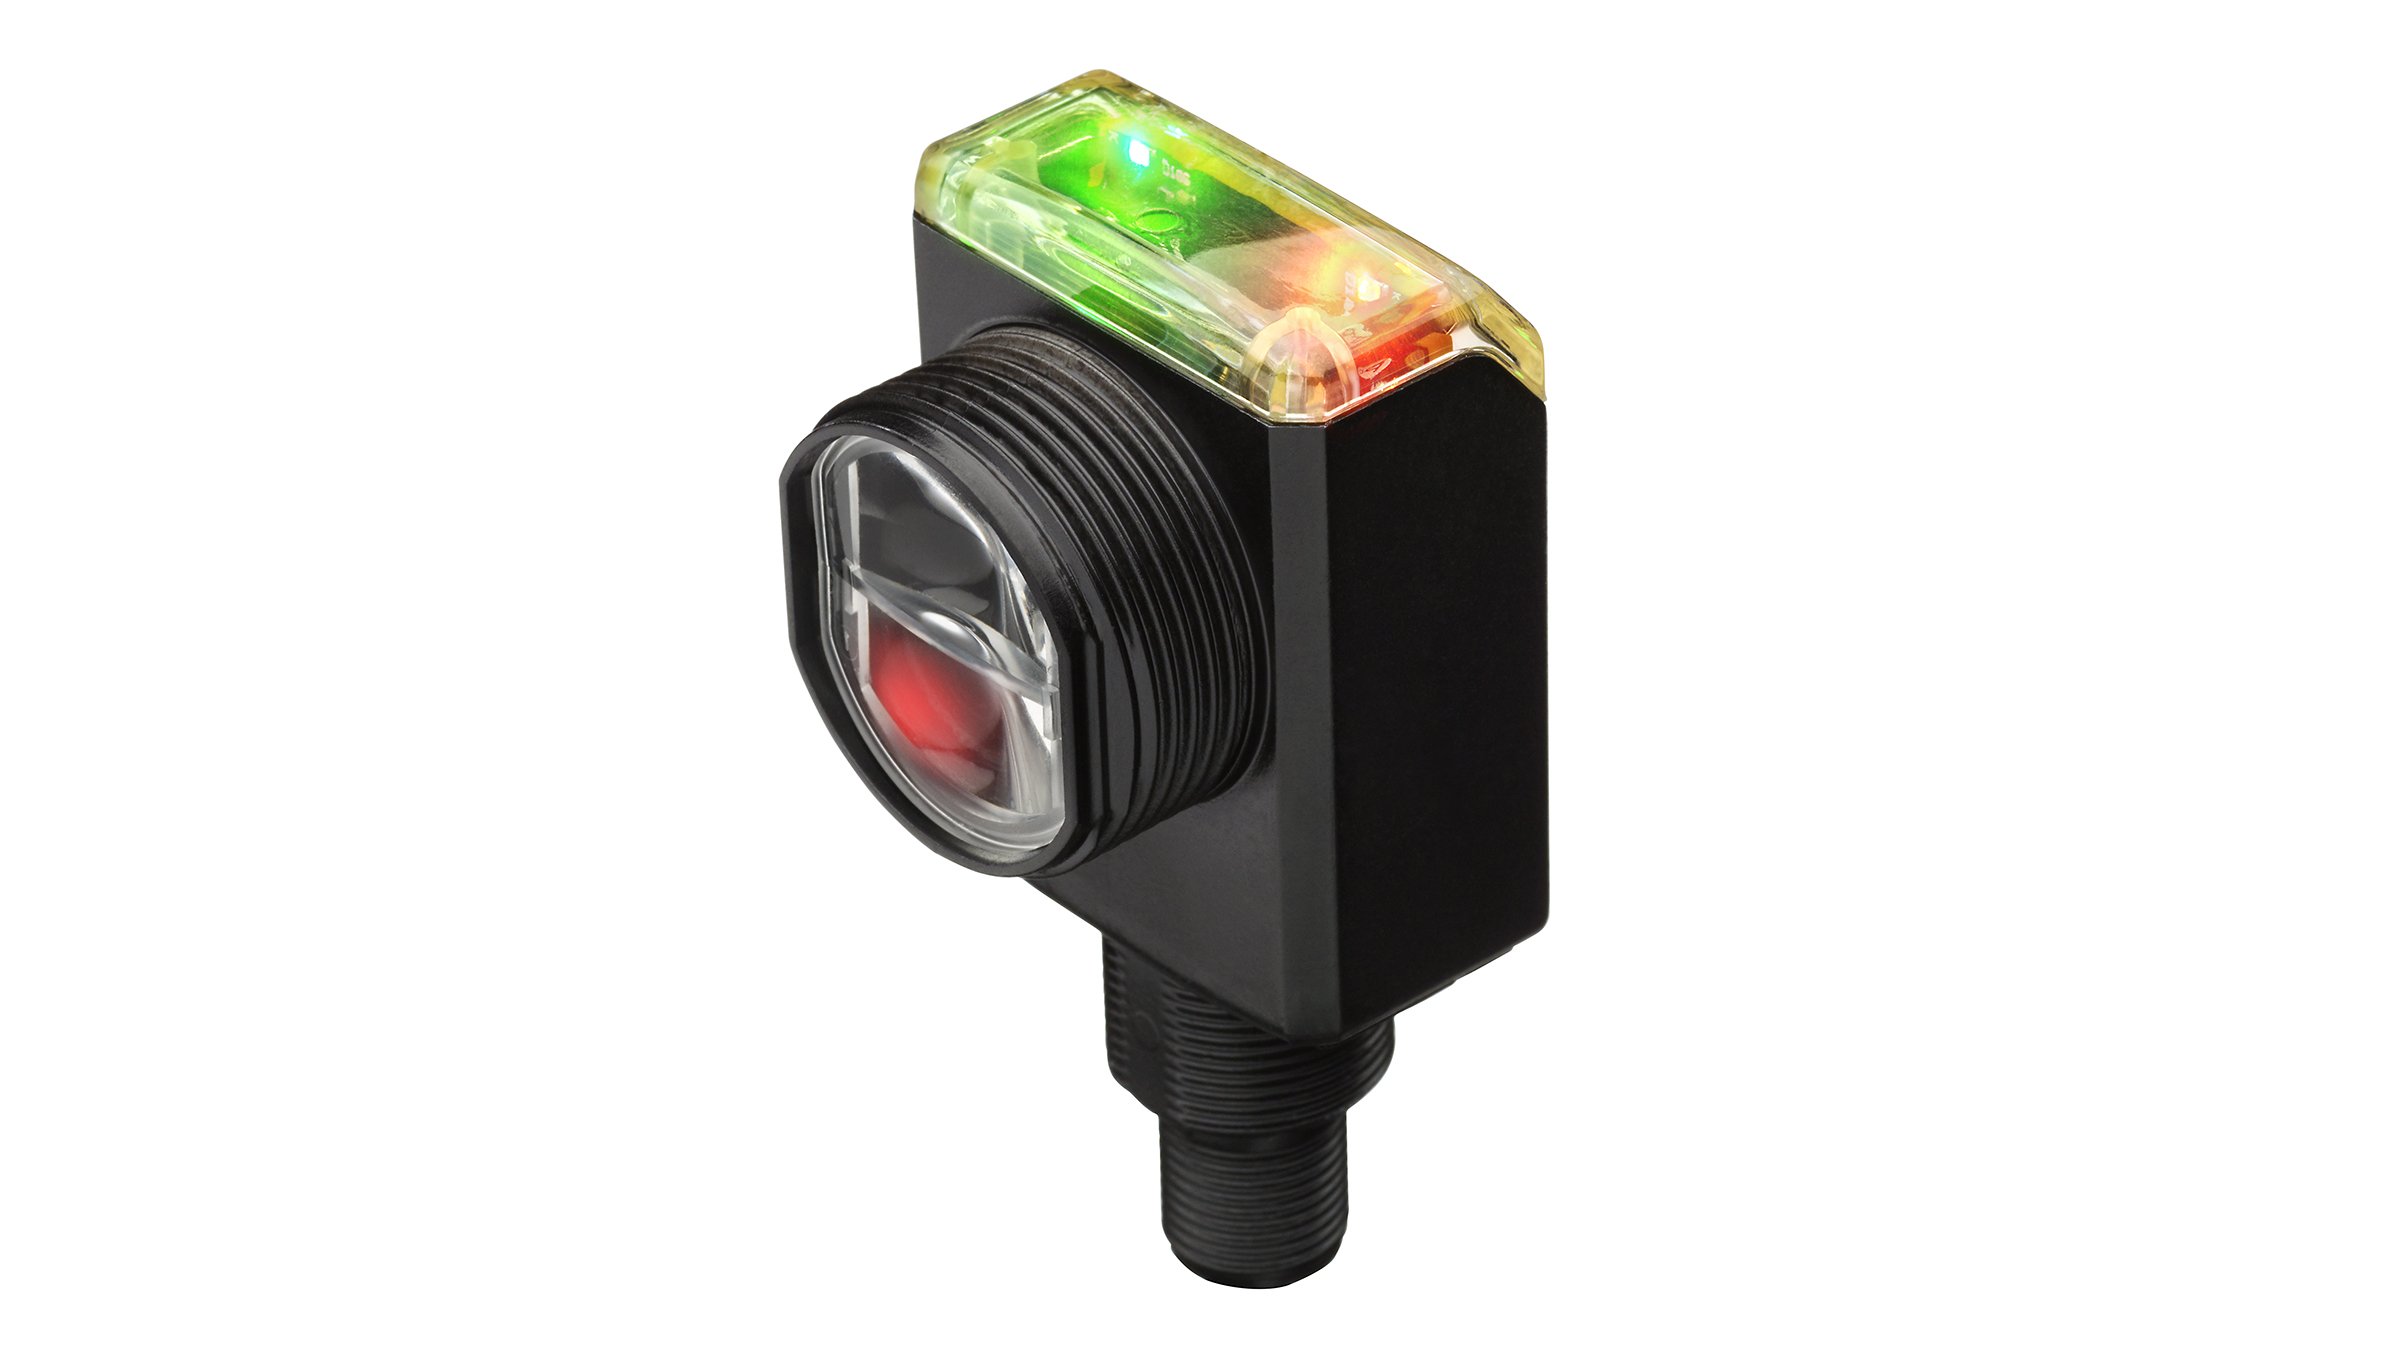 Schwarzer, rechteckiger Sensor mit Sensorkopf auf der Vorderseite und roter und grüner LED-Anzeige auf der Oberseite